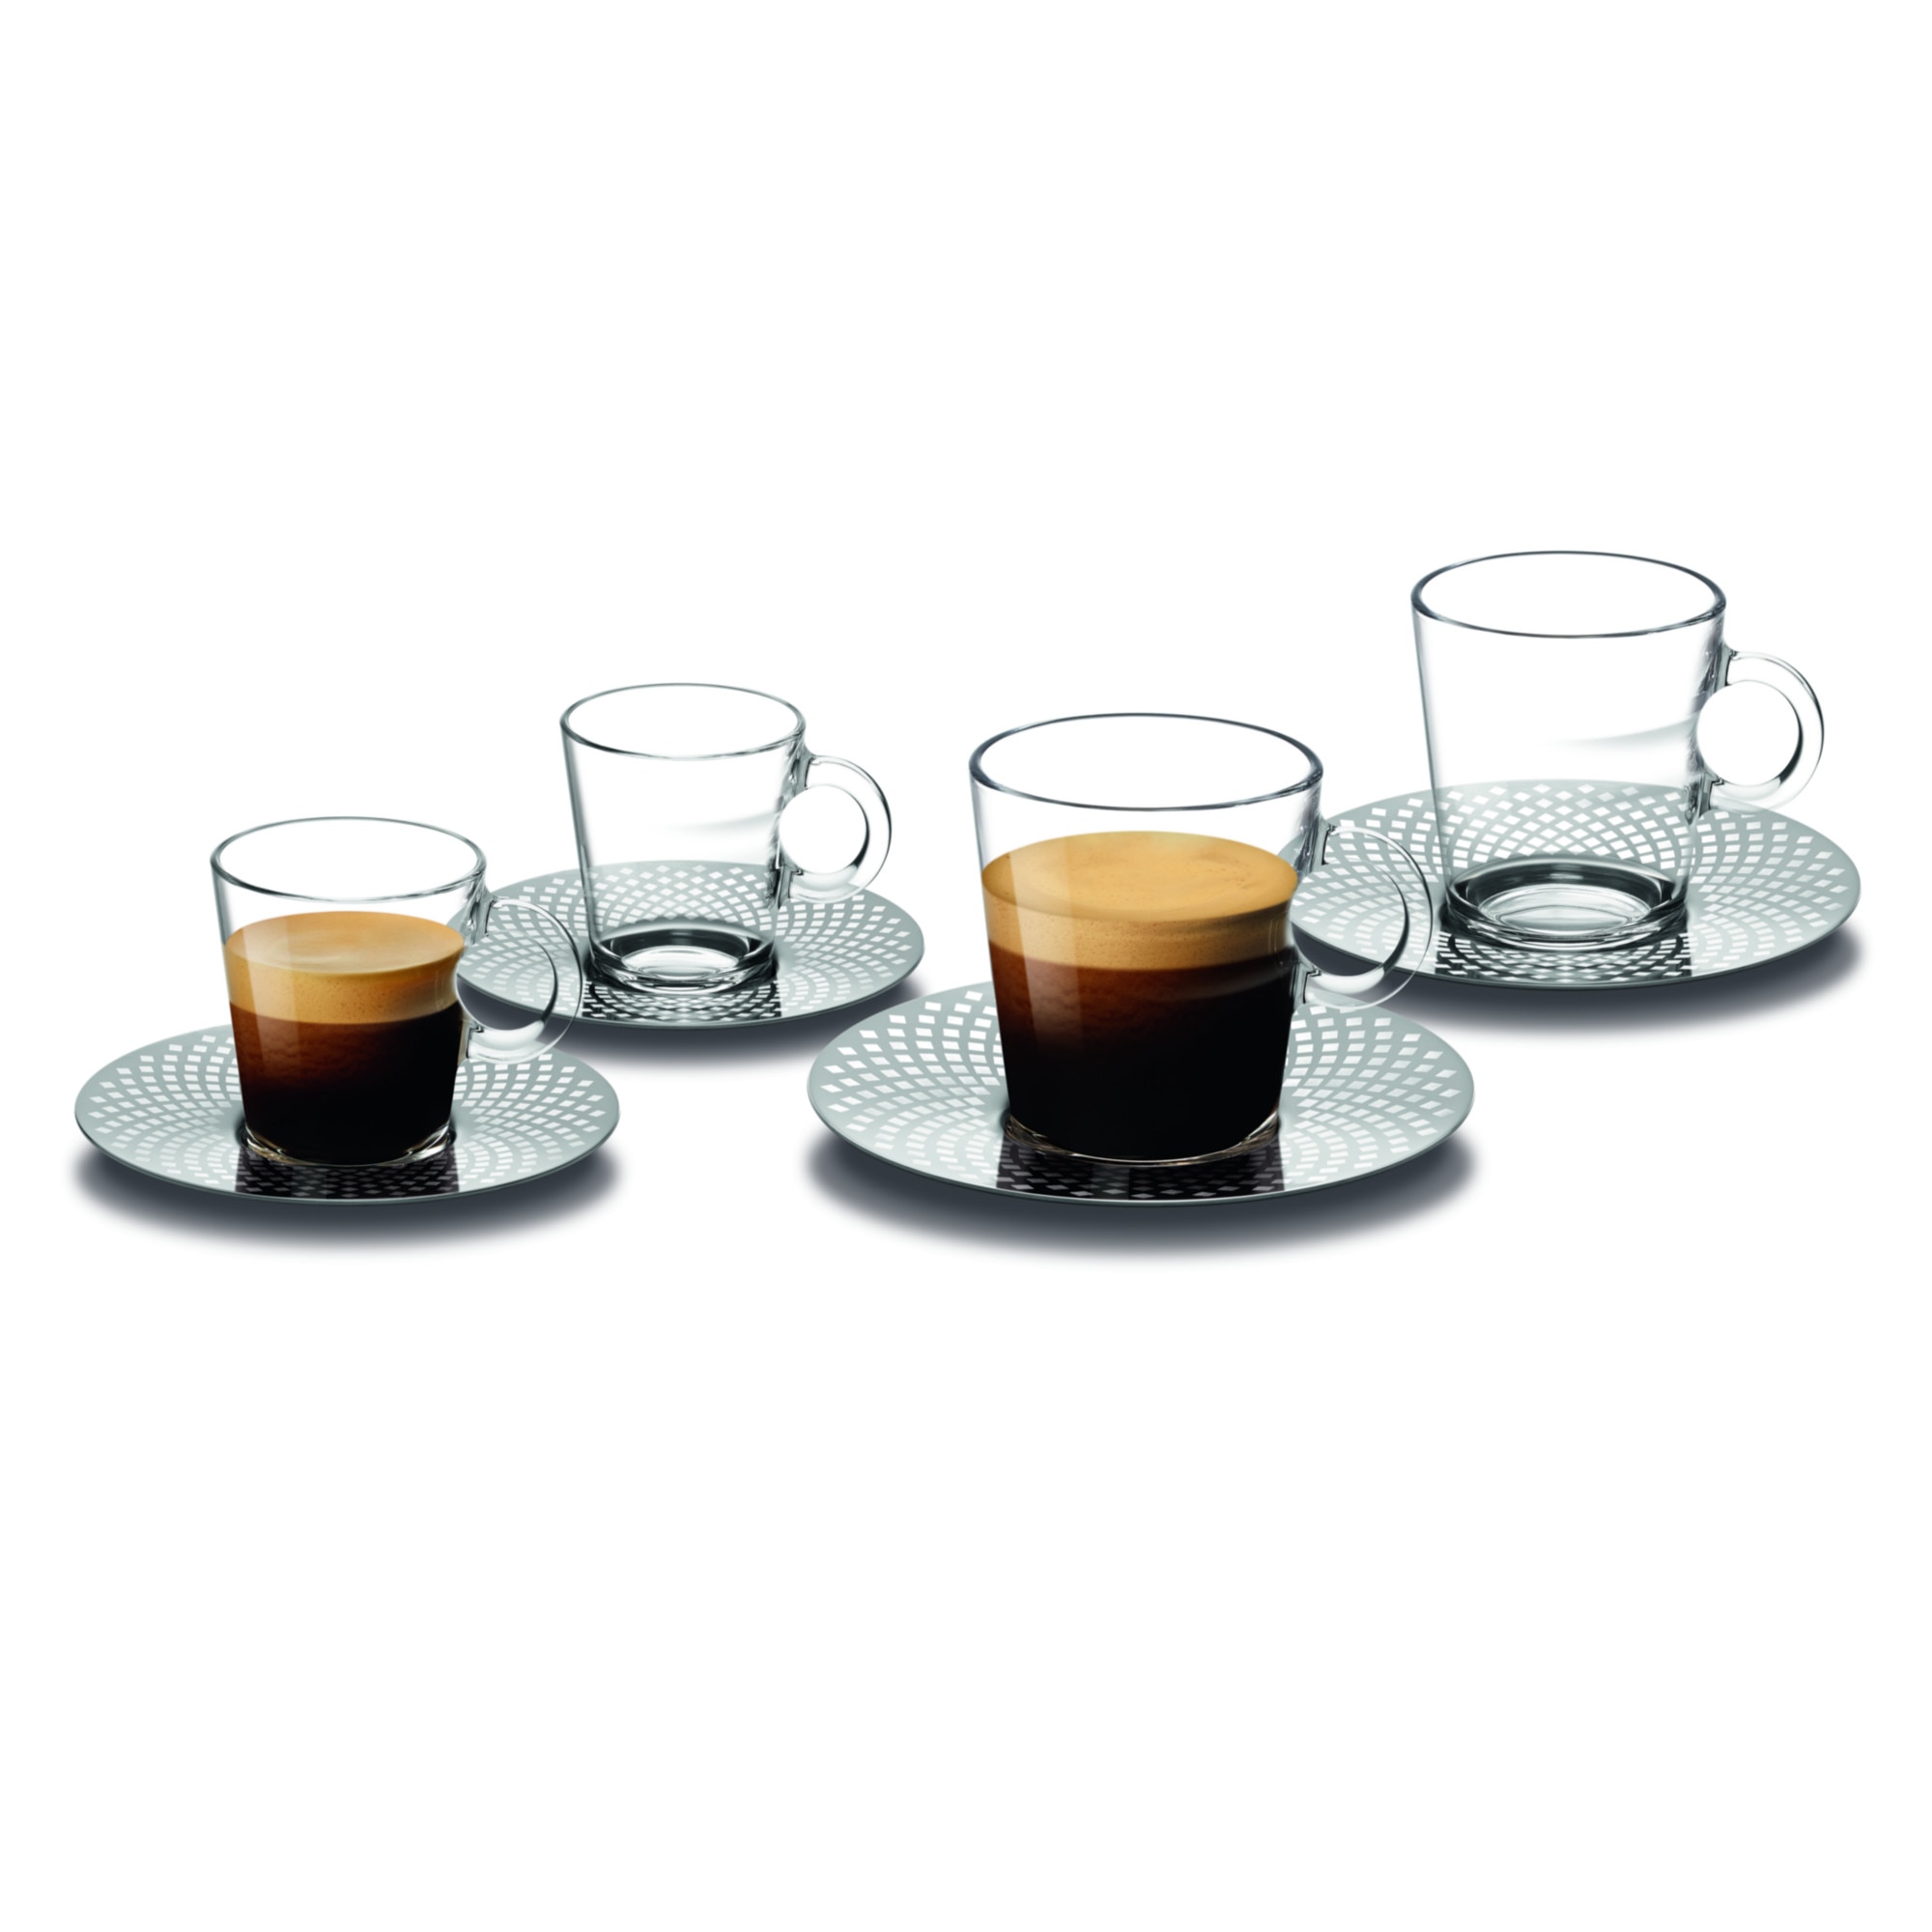 Reveal Espresso Glass l Accessories l Nespresso™ Thailand